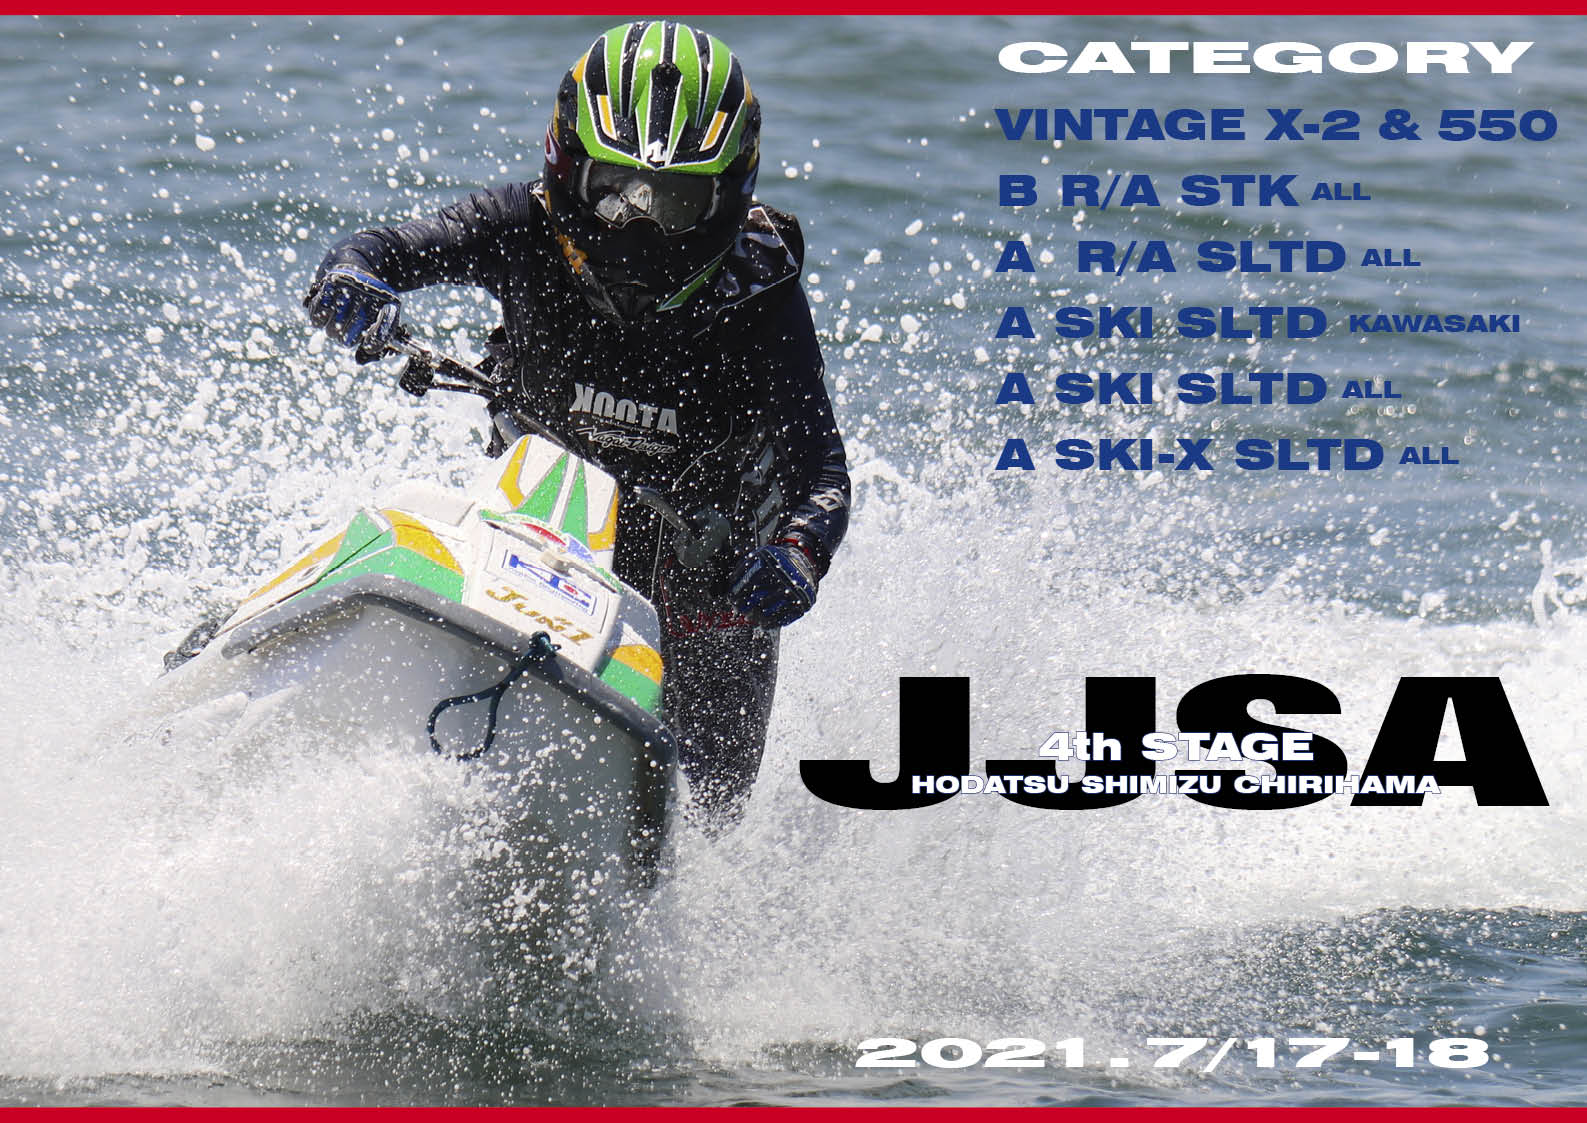 「日本のレース 」 2021 JJSA　第 4 戦　「宝達志水・千里浜大会」　「VINTAGE ”X-２”＆”550”」「B R/A STK ALL」「A  R/A SLTD ALL」「A SKI SLTD kawasaki」「A SKI SLTD ALL」「A SKI-X SLTD ALL」 　ジェットスキー（水上バイク）